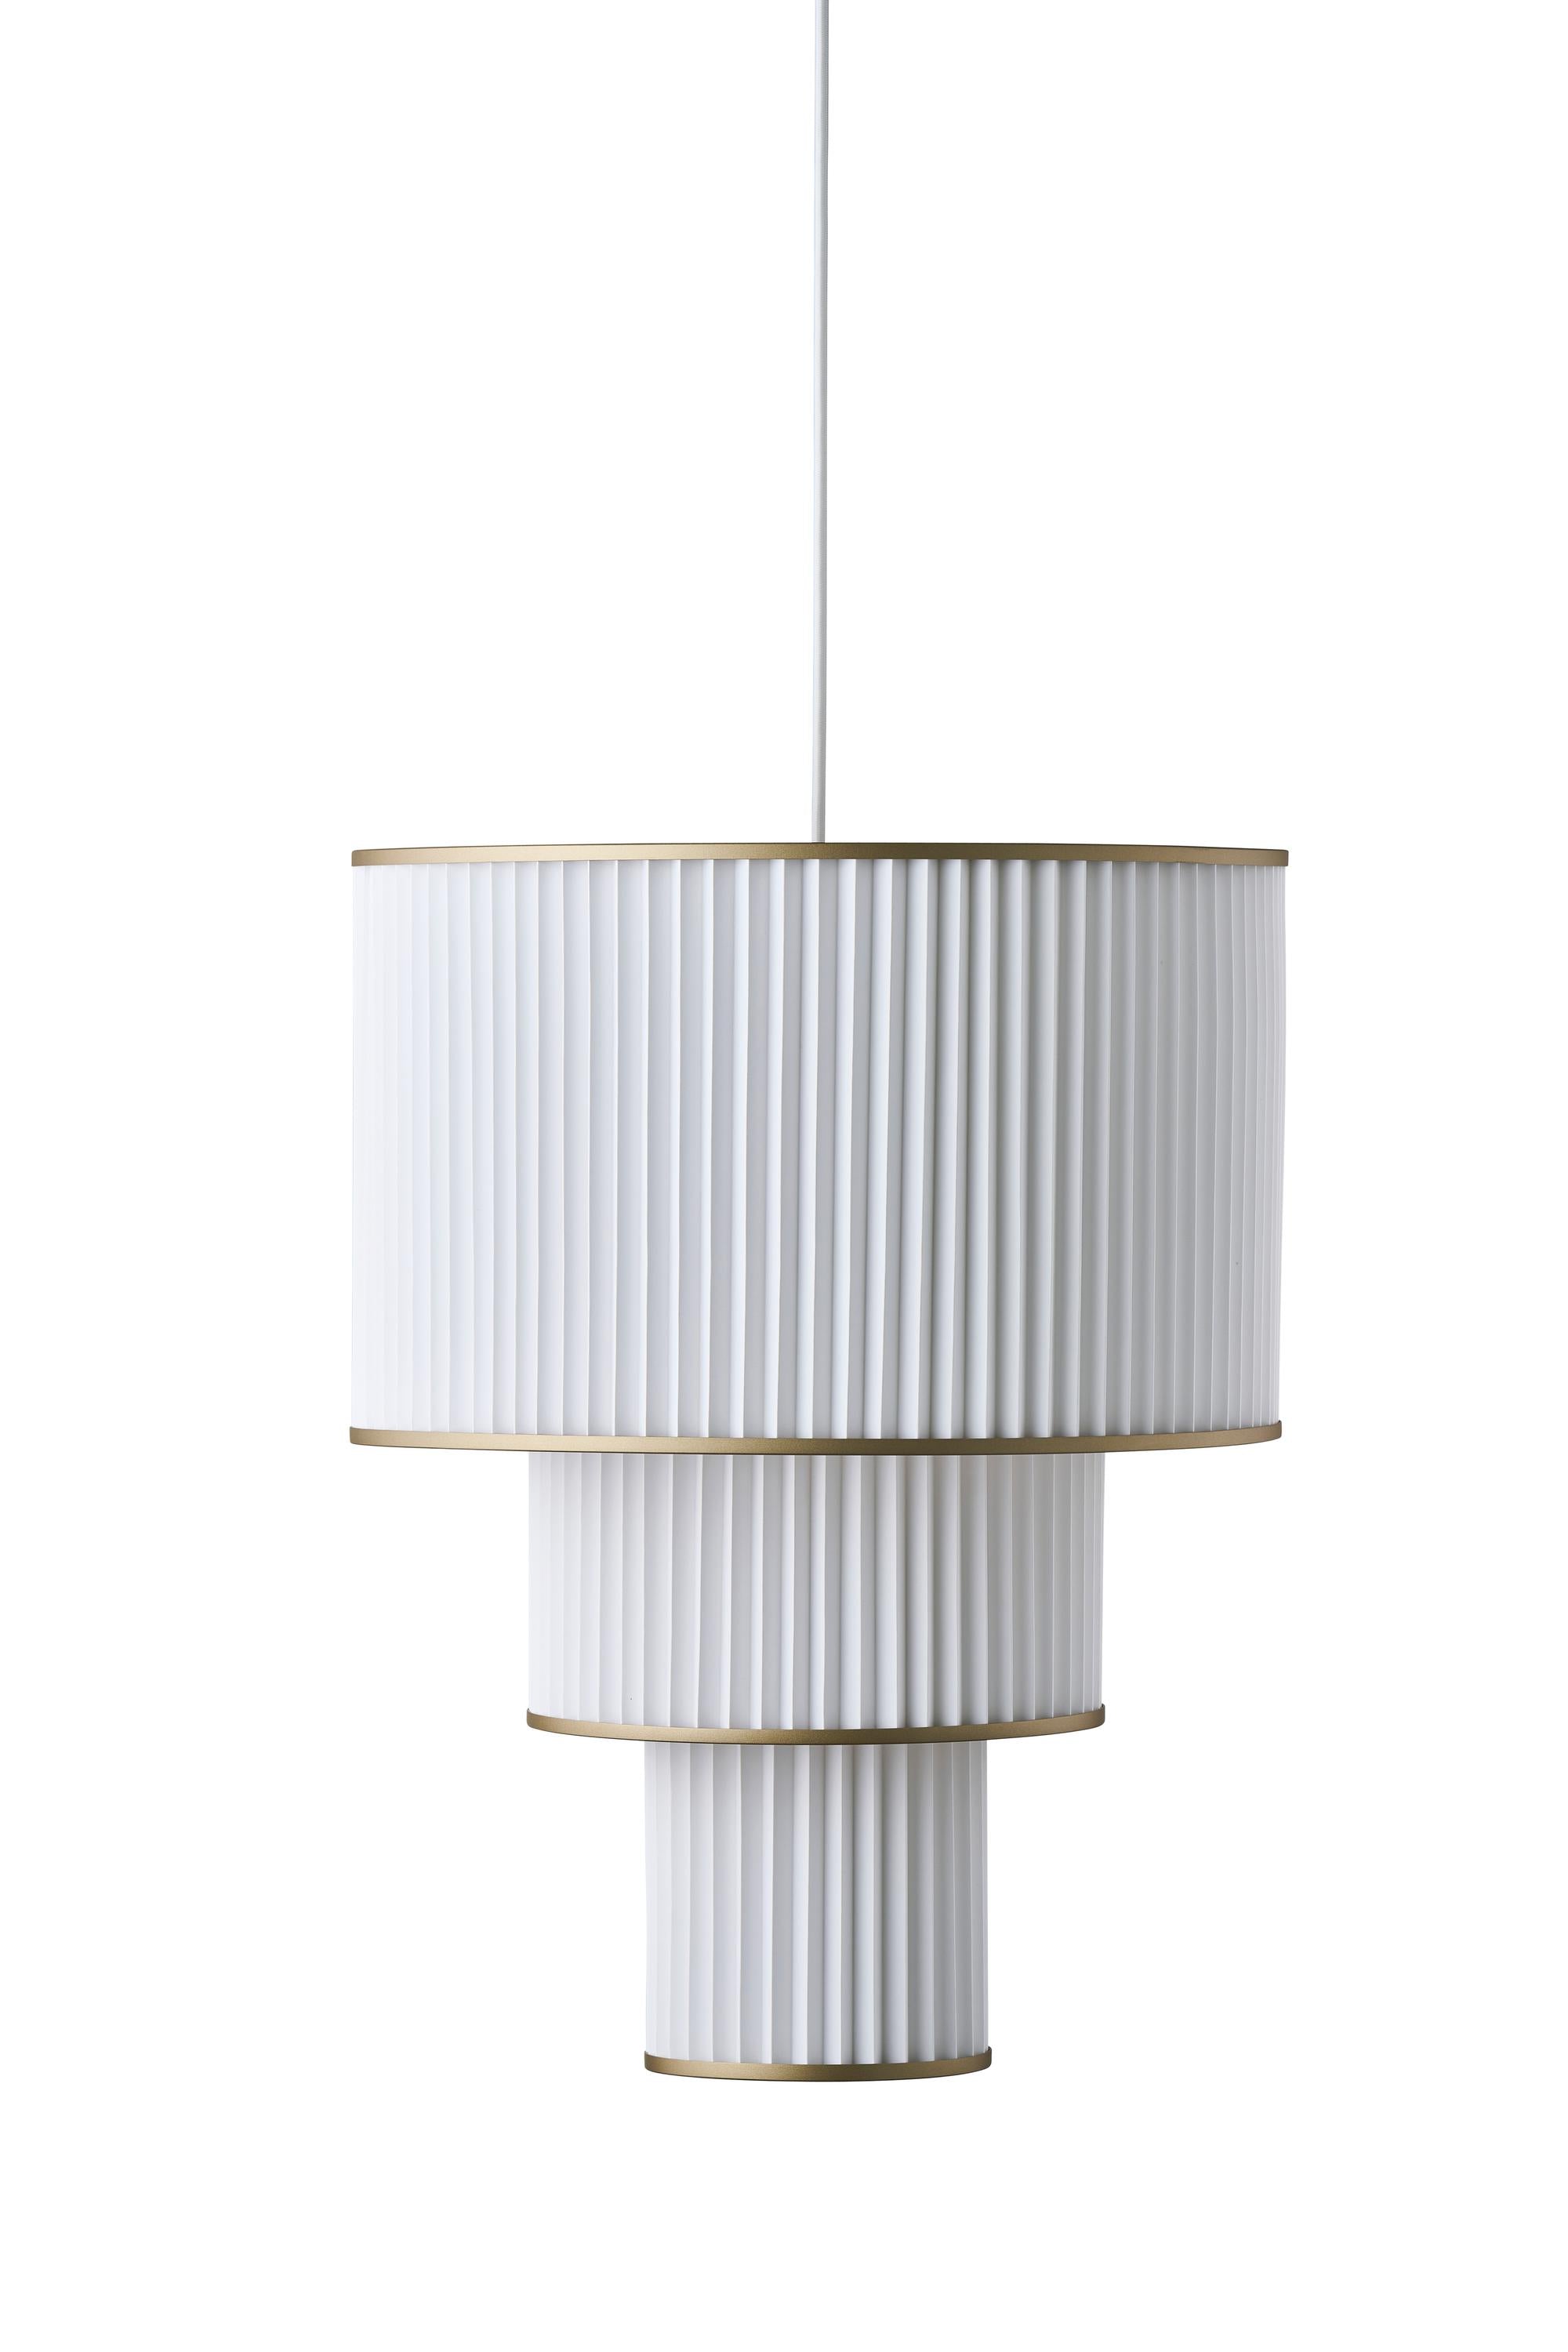 Le Klint Plivello -ophængslamp Gylden/hvid med 3 nuancer (S M L)